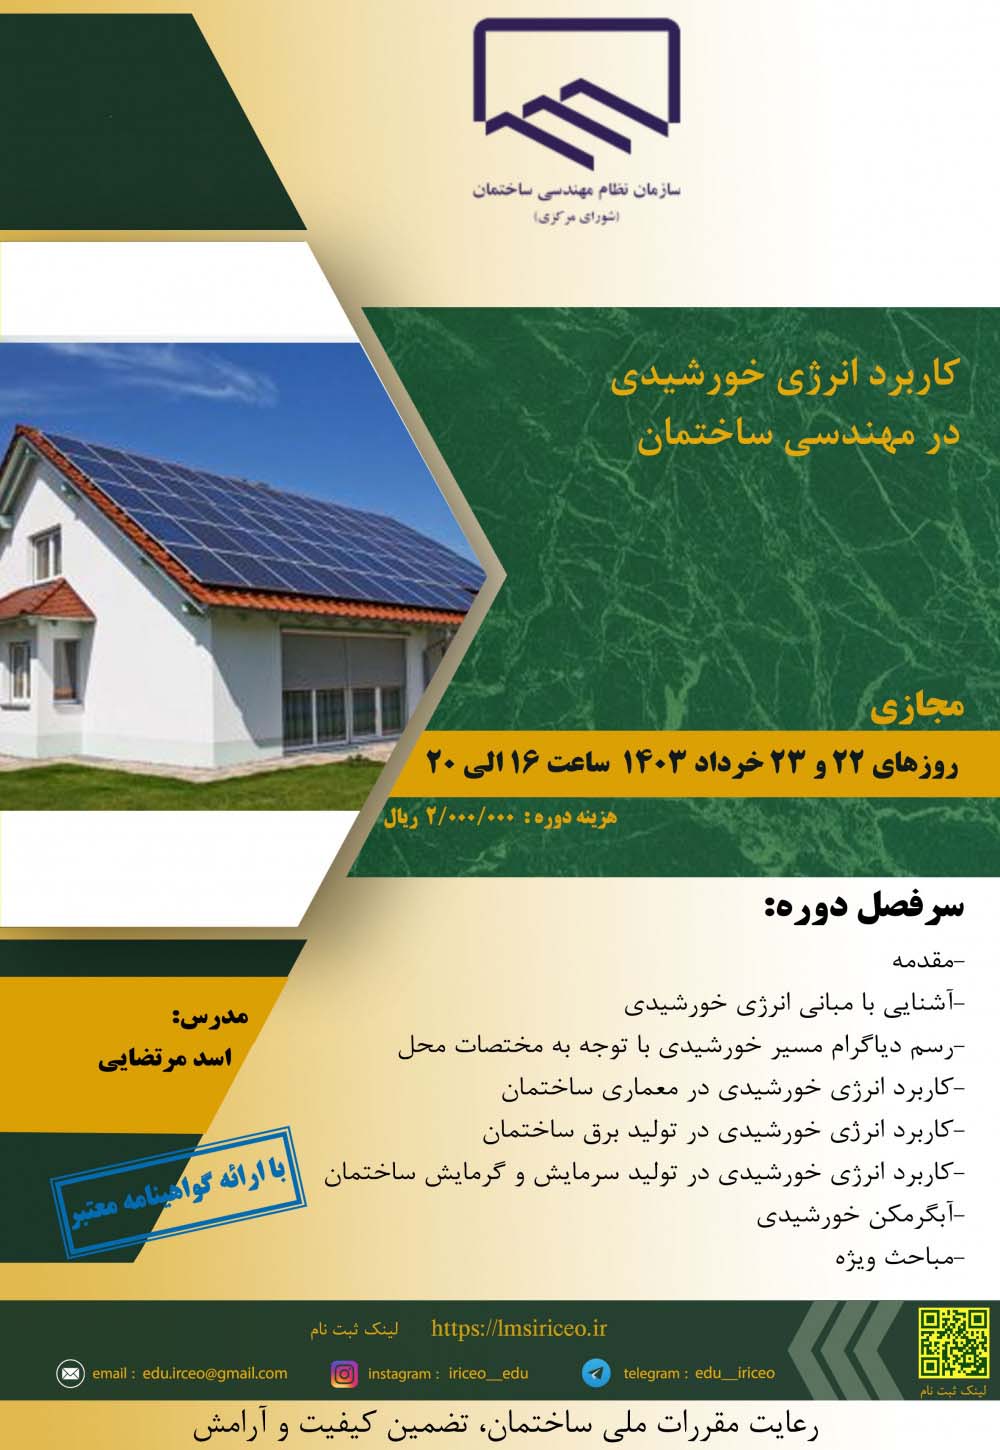 کارگاه آموزشی کاربرد انرژی خورشیدی در مهندسی ساختمان